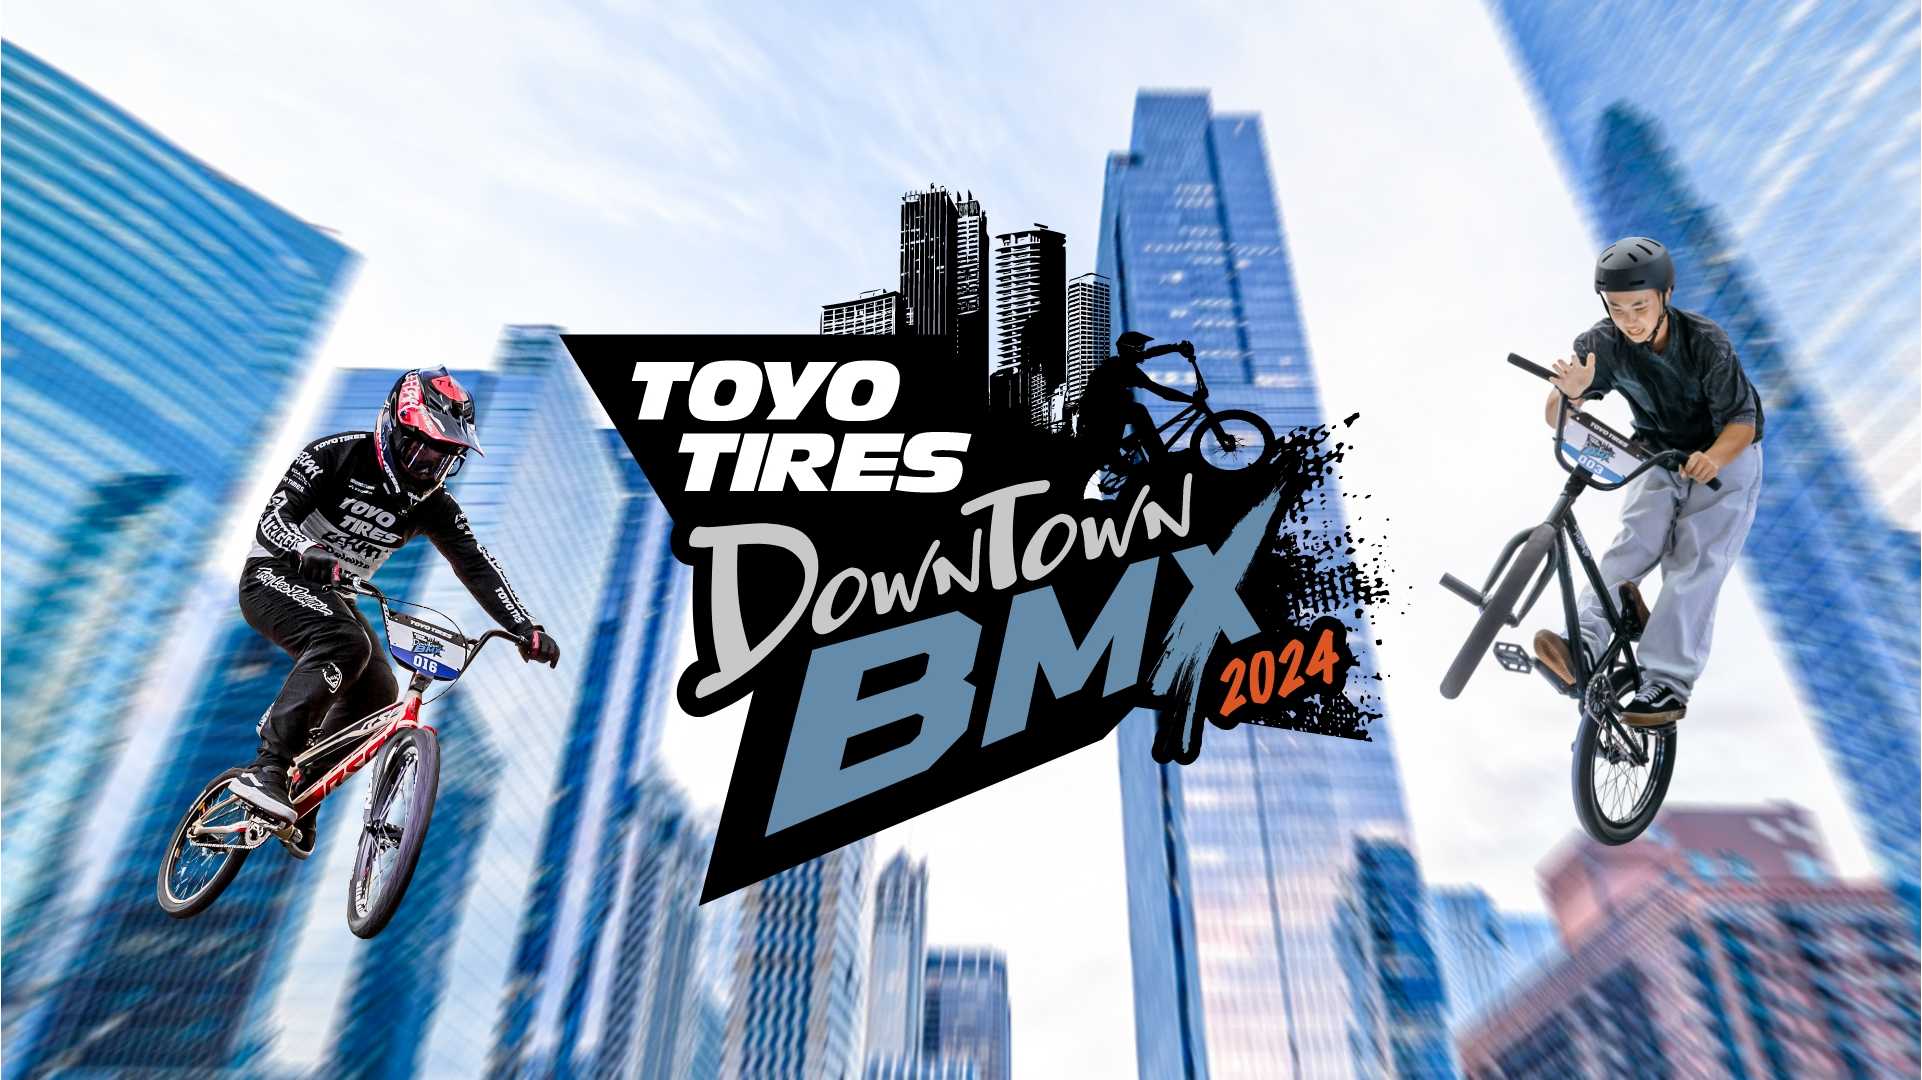 都市型エクストリームスポーツイベント「TOYO TIRES Downtown BMX 2024」を開催